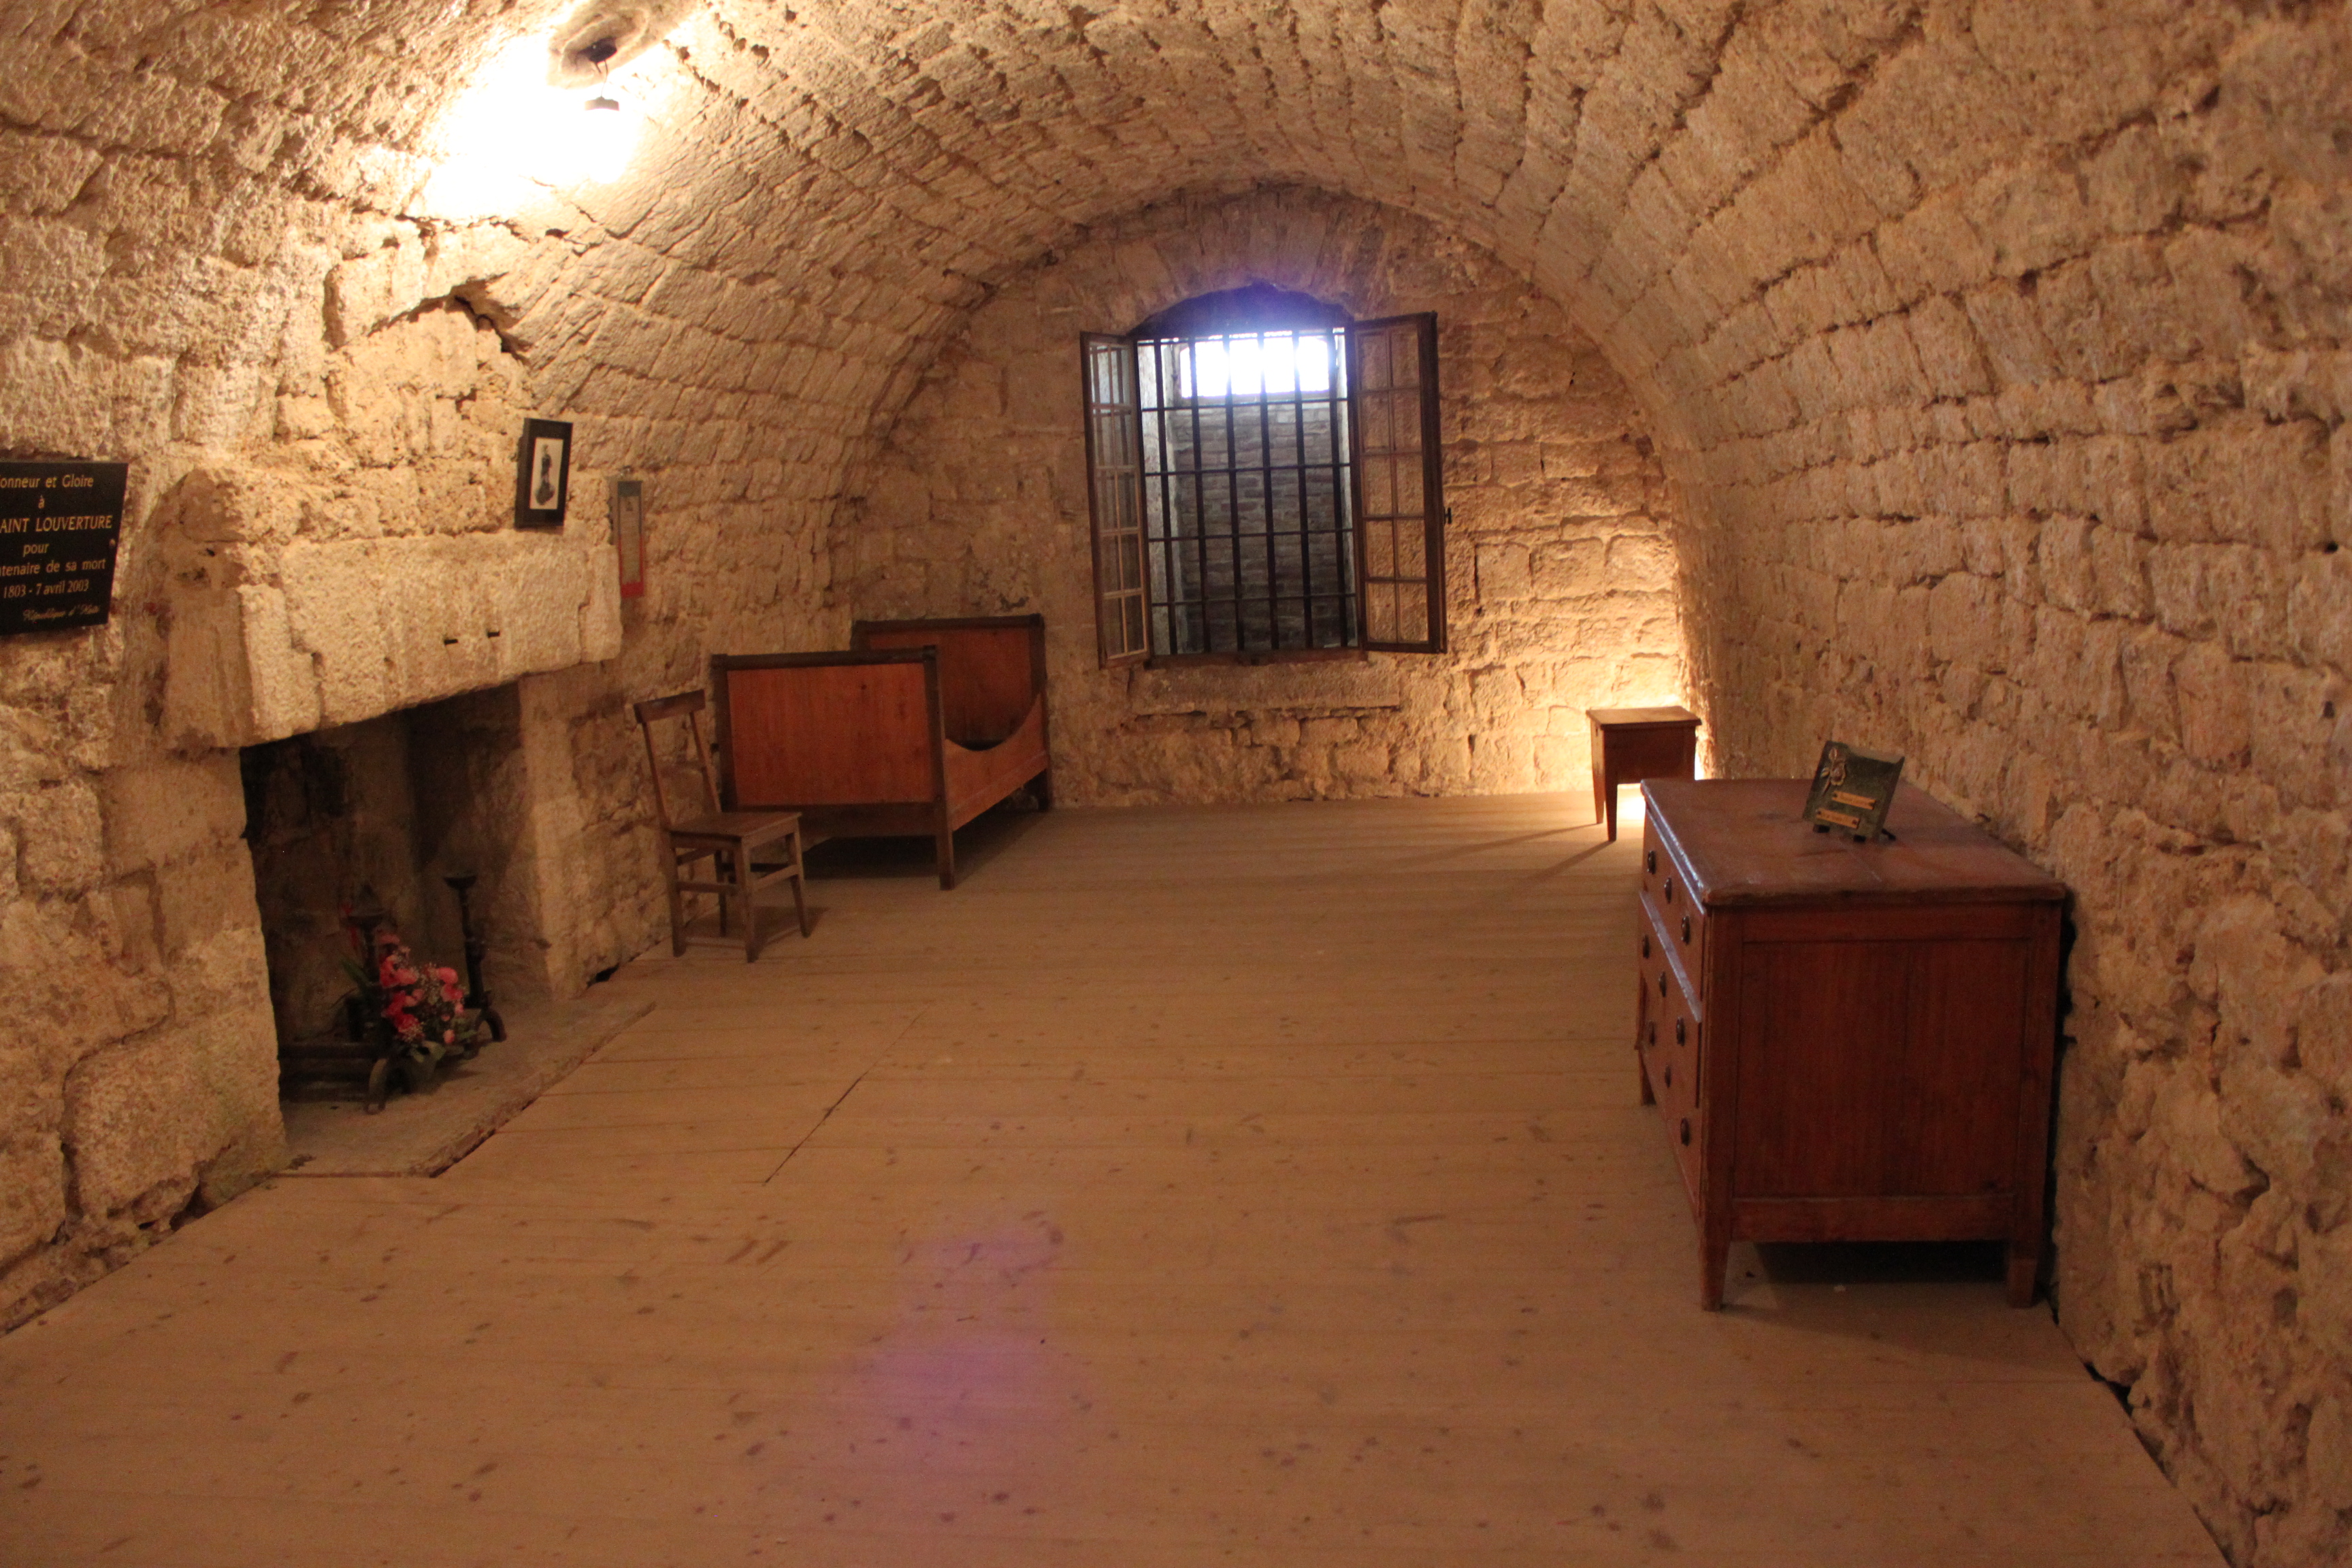 Cellule où a été incarcéré Toussaint Louverture au Fort de Joux, Doubs, Franche-Comté, France. 2011. (cc)Wikimedia/Christophe Finot